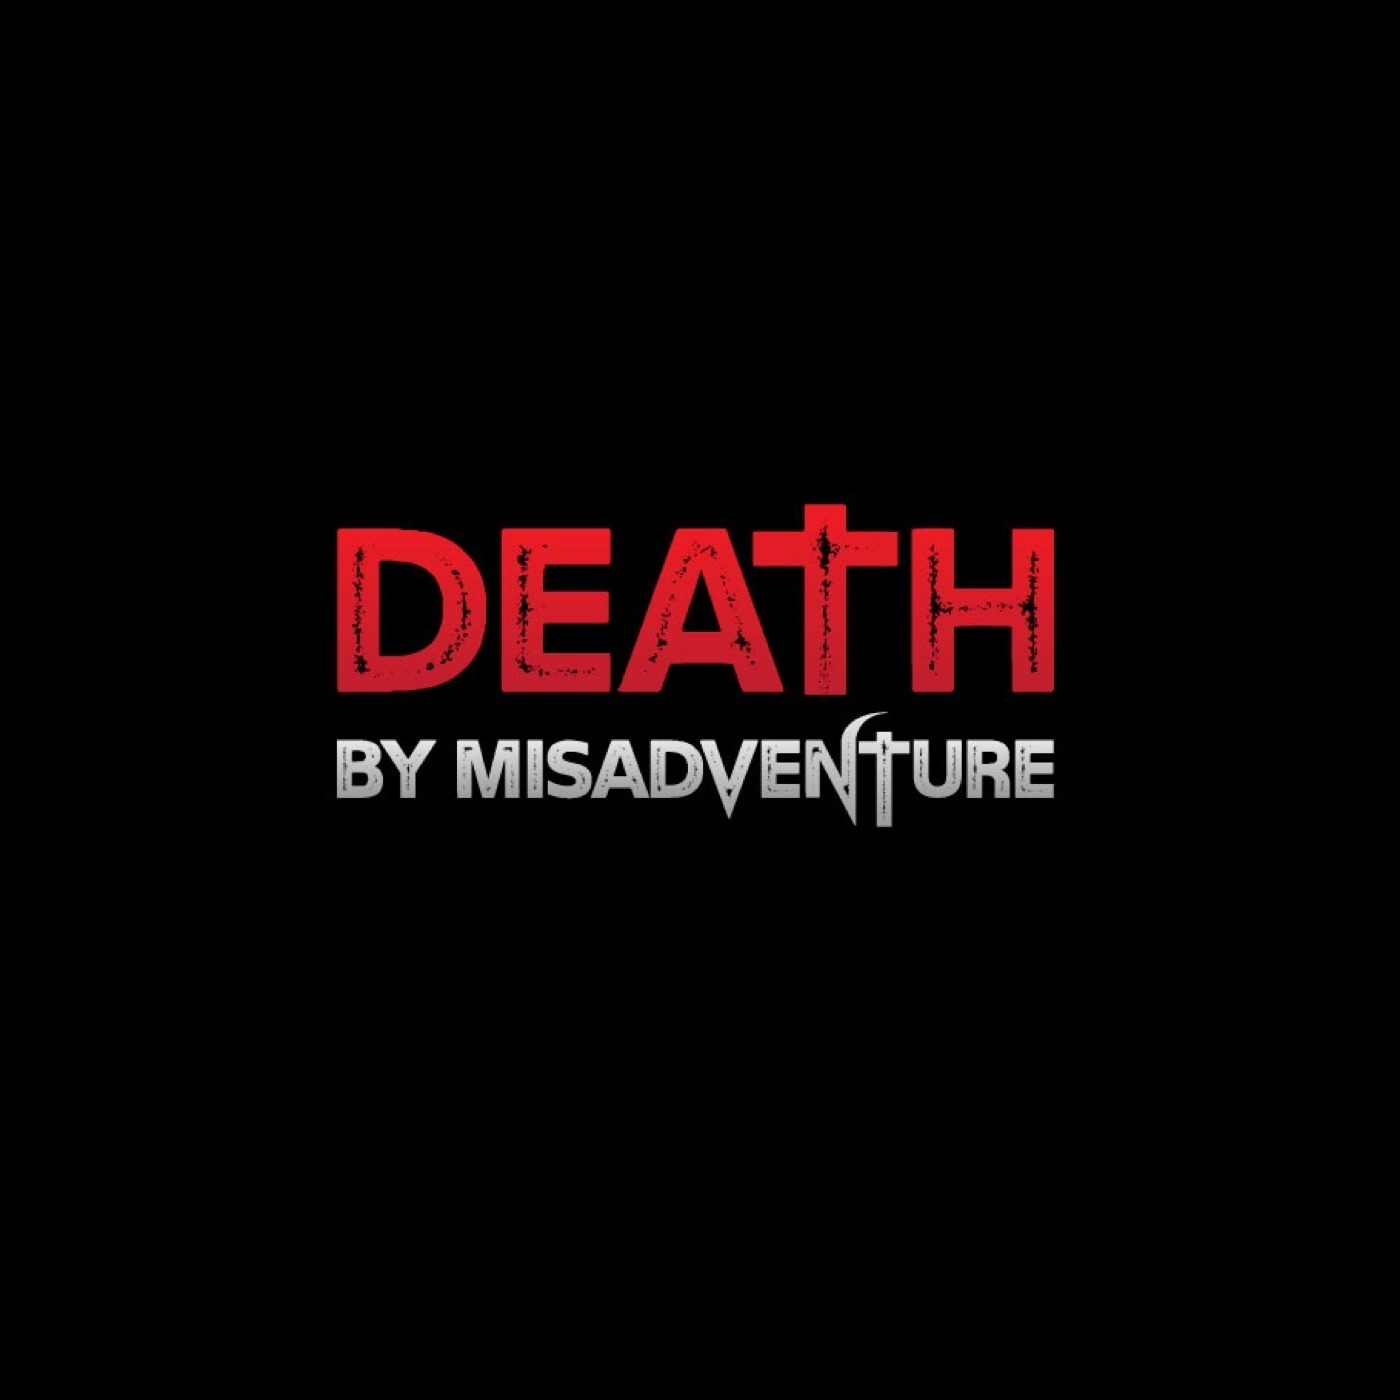 DEATH BY MISADVENTURE